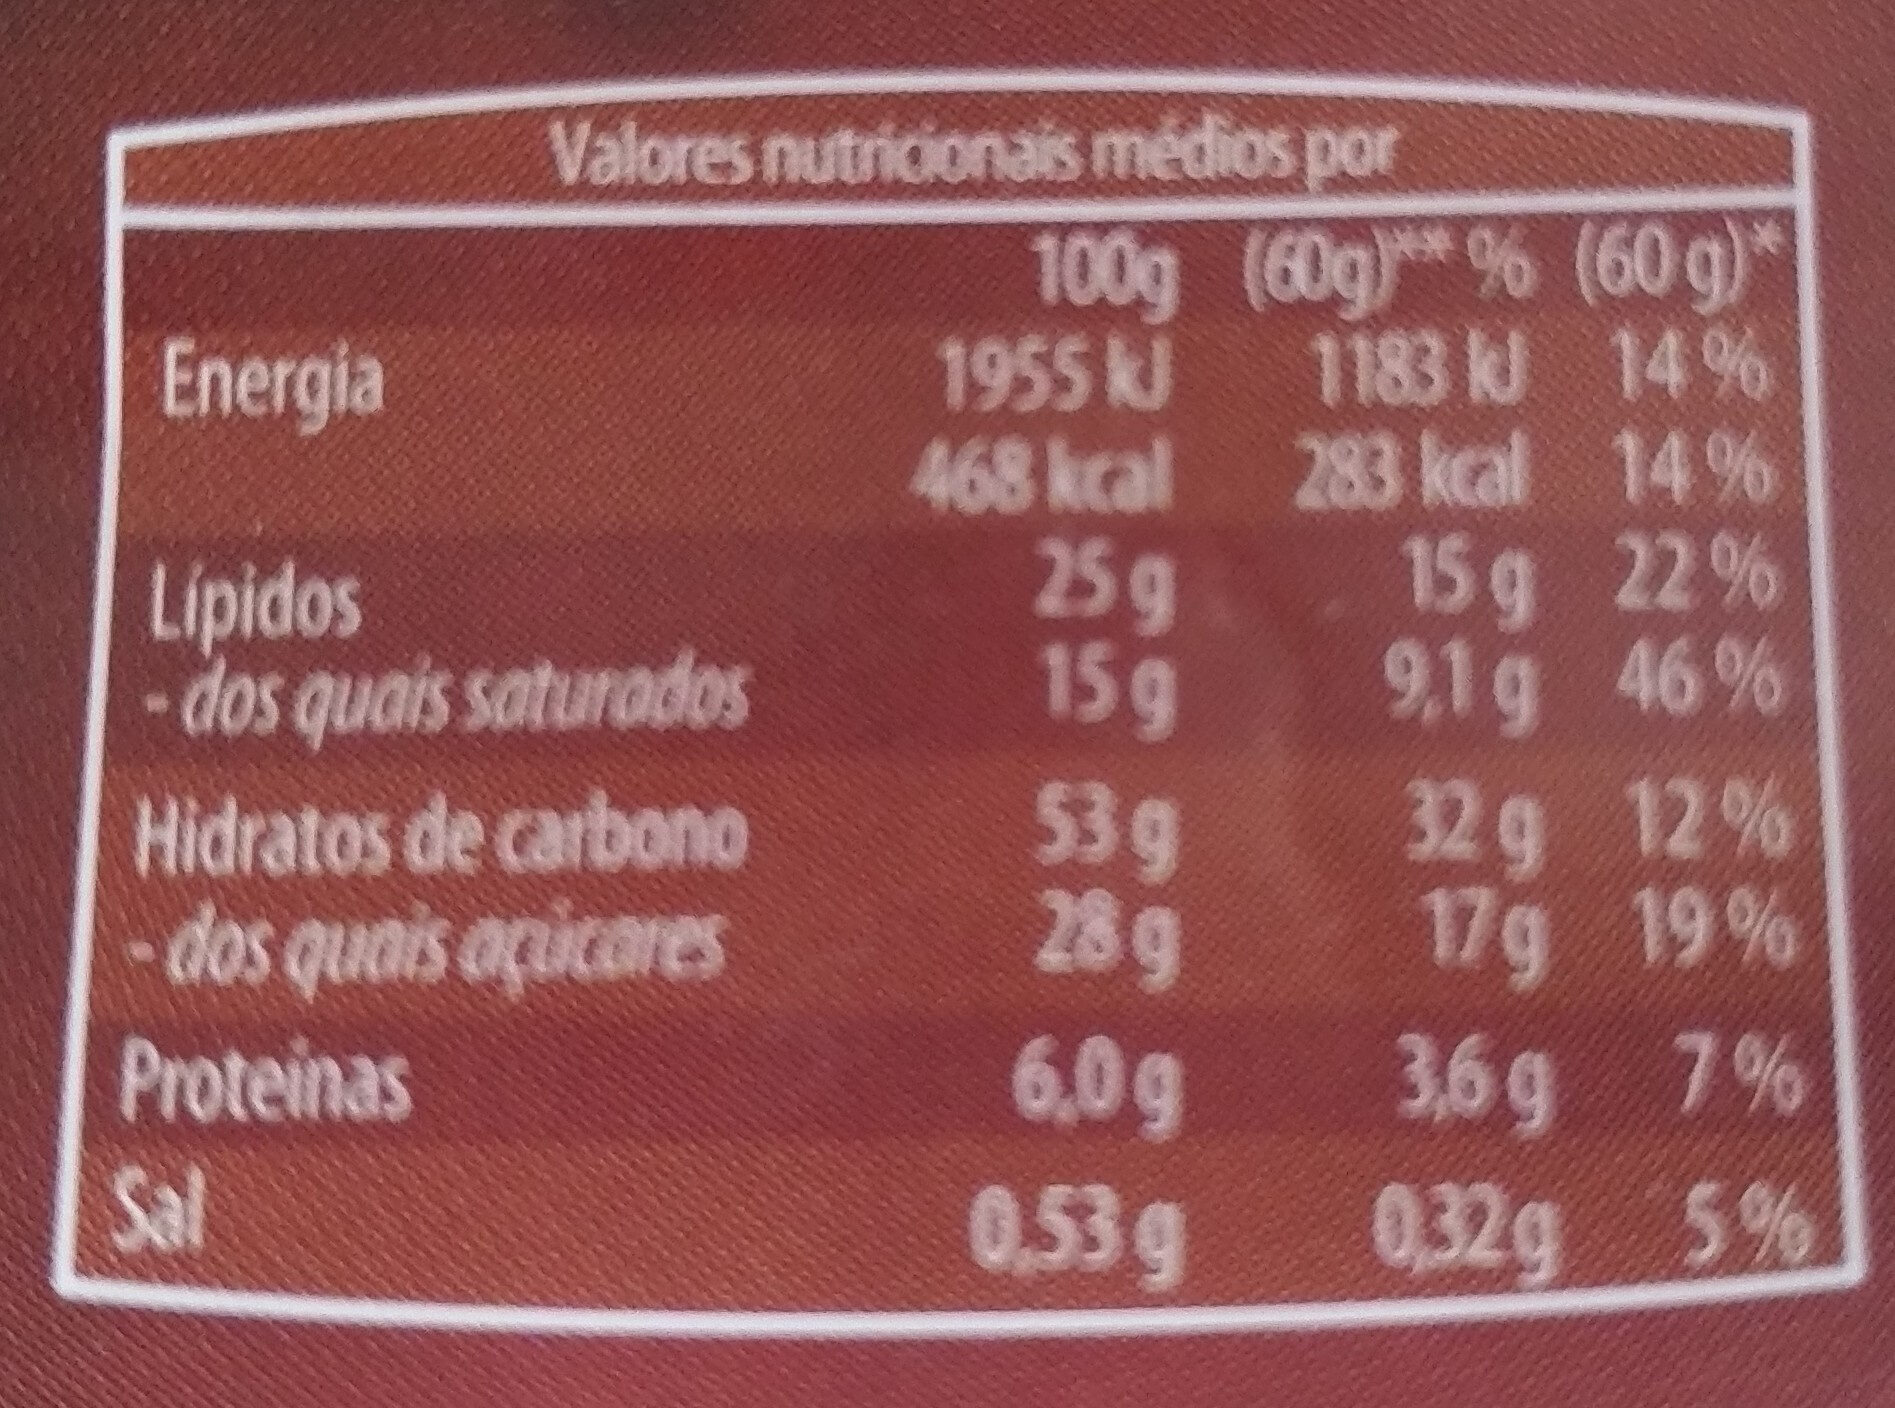 5 Waffles com Cobertura de Cacau - Tableau nutritionnel - pt